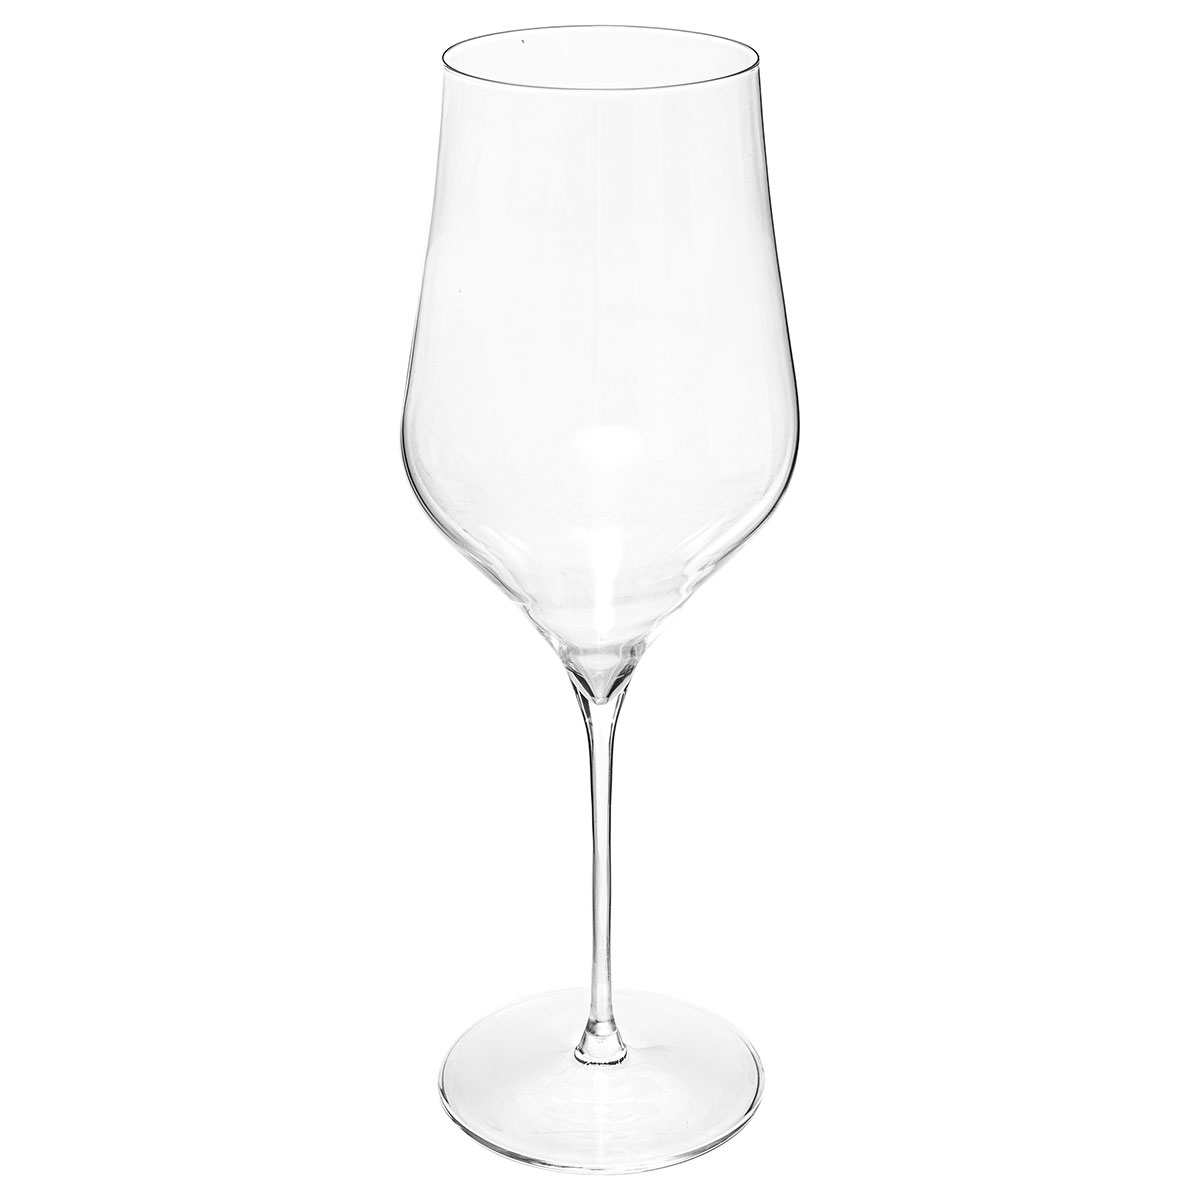 Ποτήρια Κρασιού Κολωνάτα 740ml (Σετ 2τμχ) S-D Rhone 154902 219628